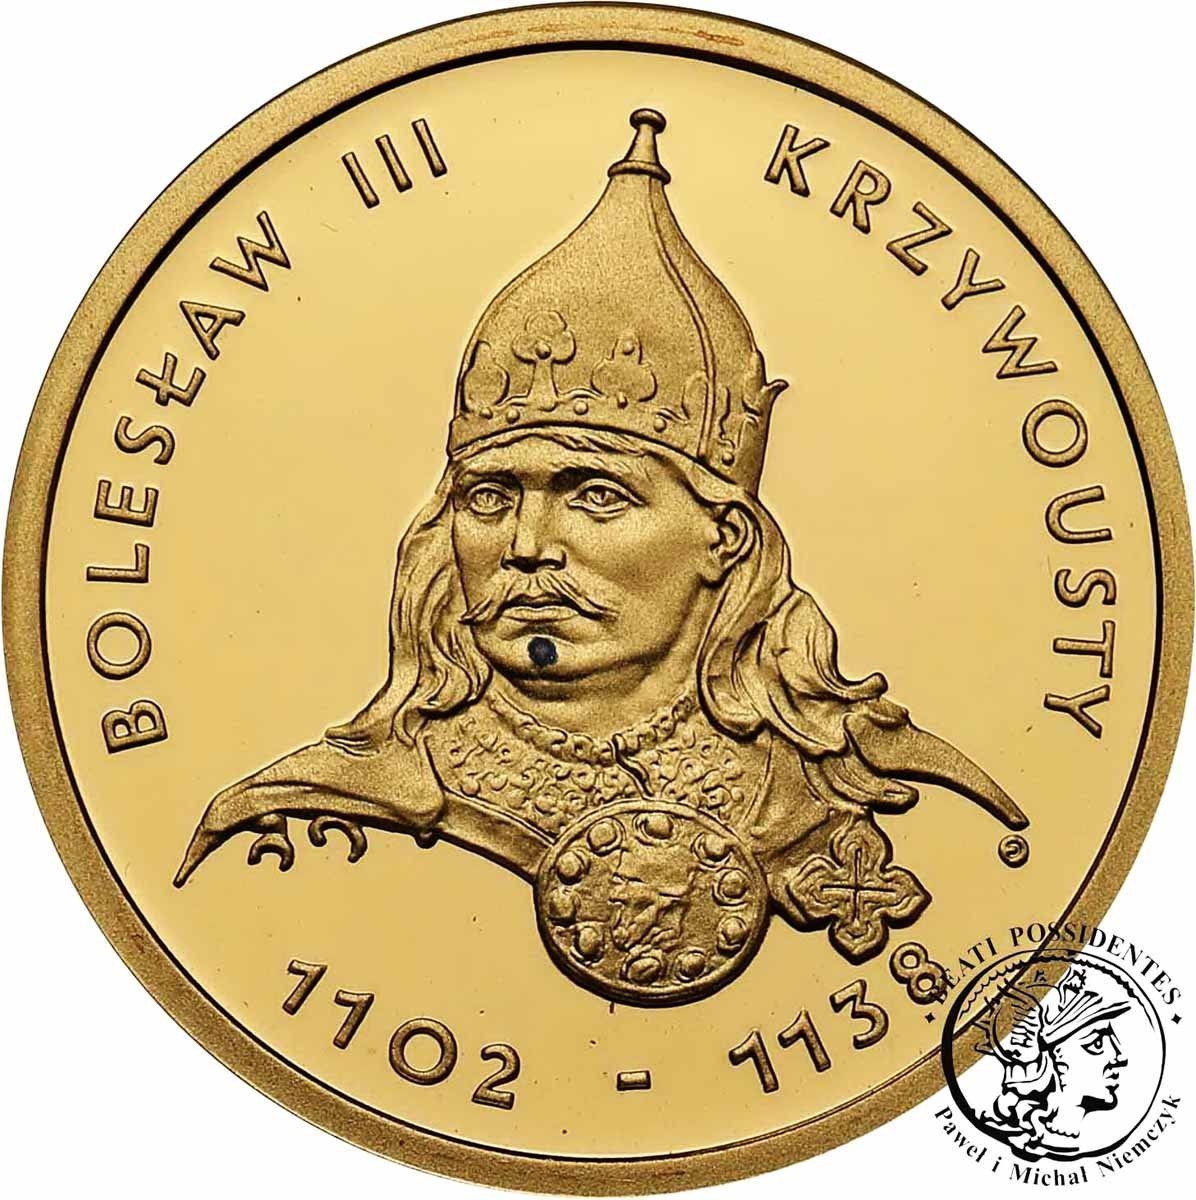 Polska III RP 100 złotych 2001 Bolesław III Krzywousty st.L